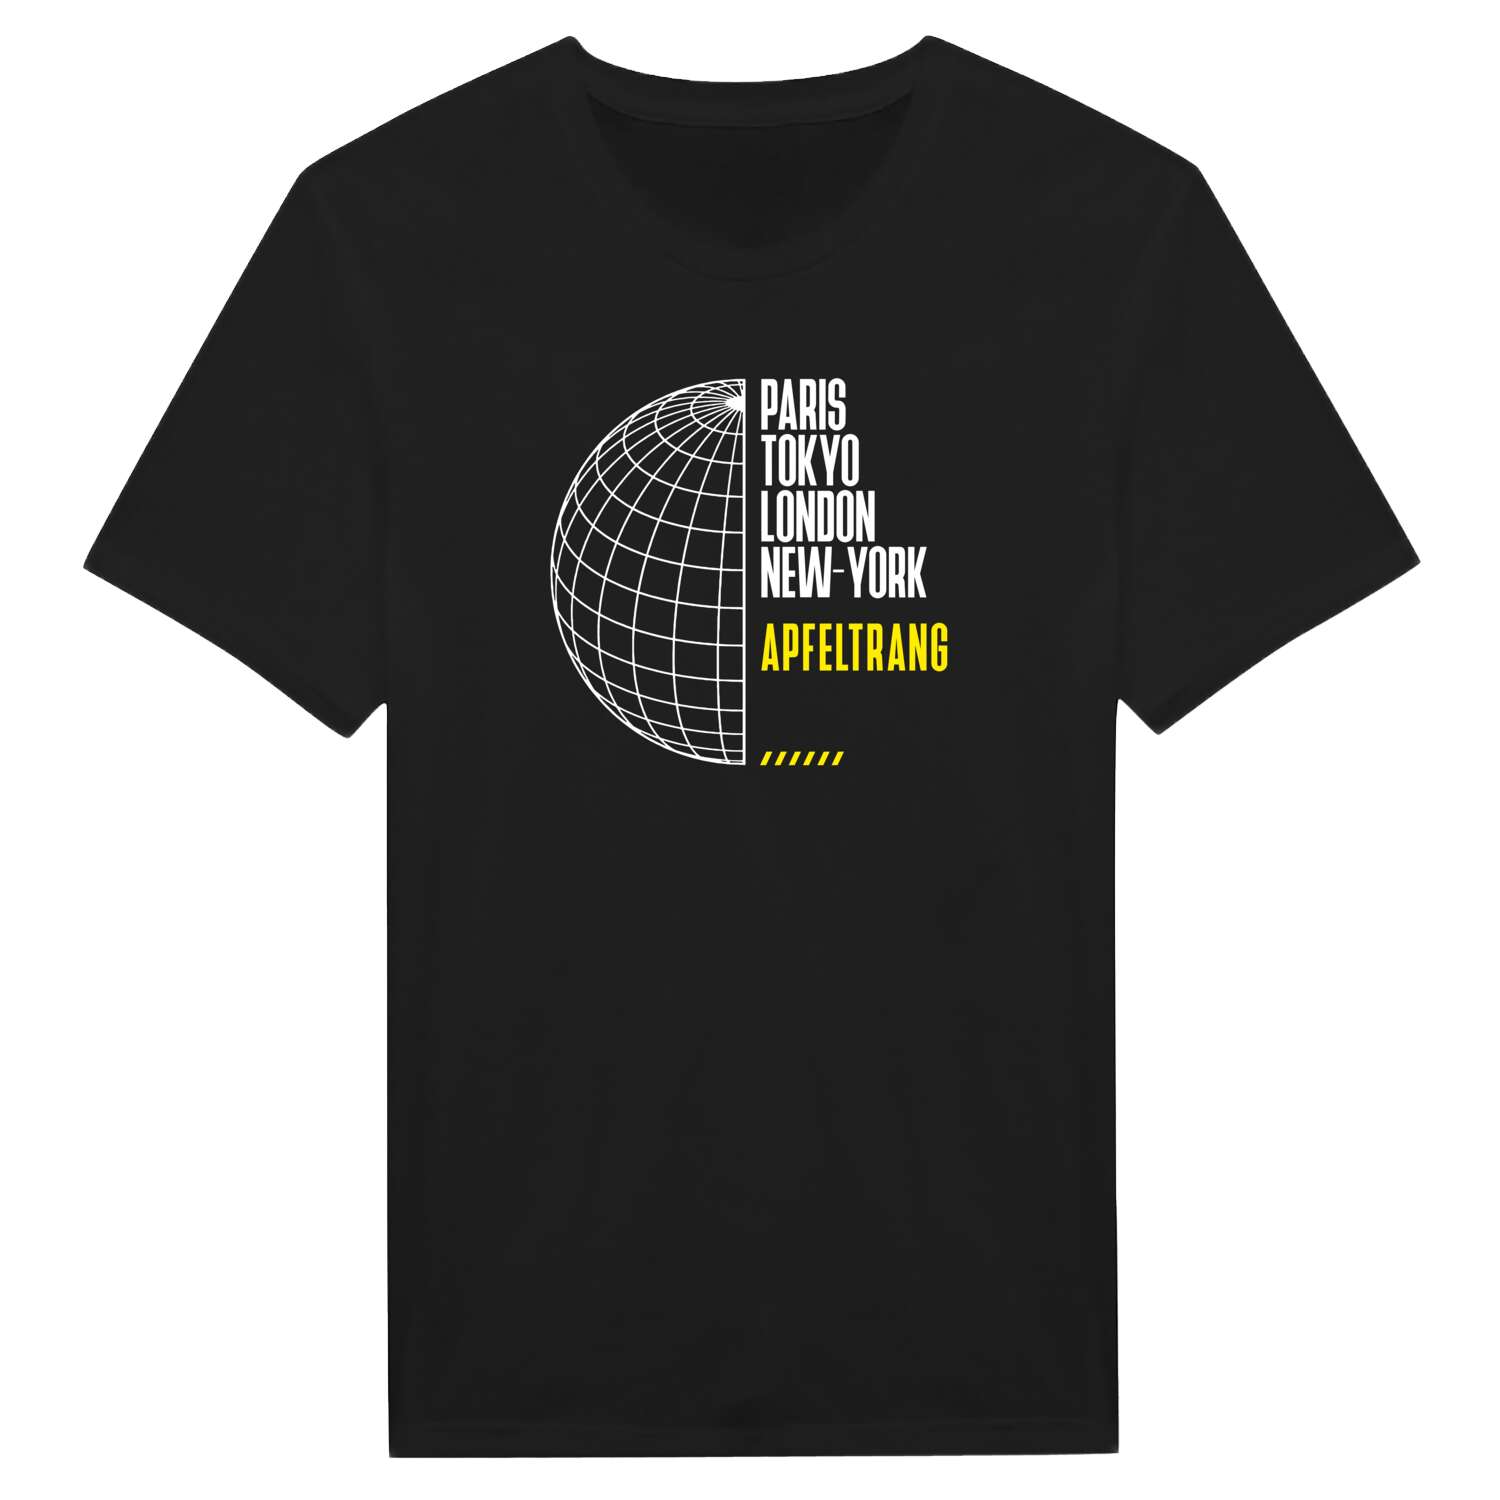 Apfeltrang T-Shirt »Paris Tokyo London«